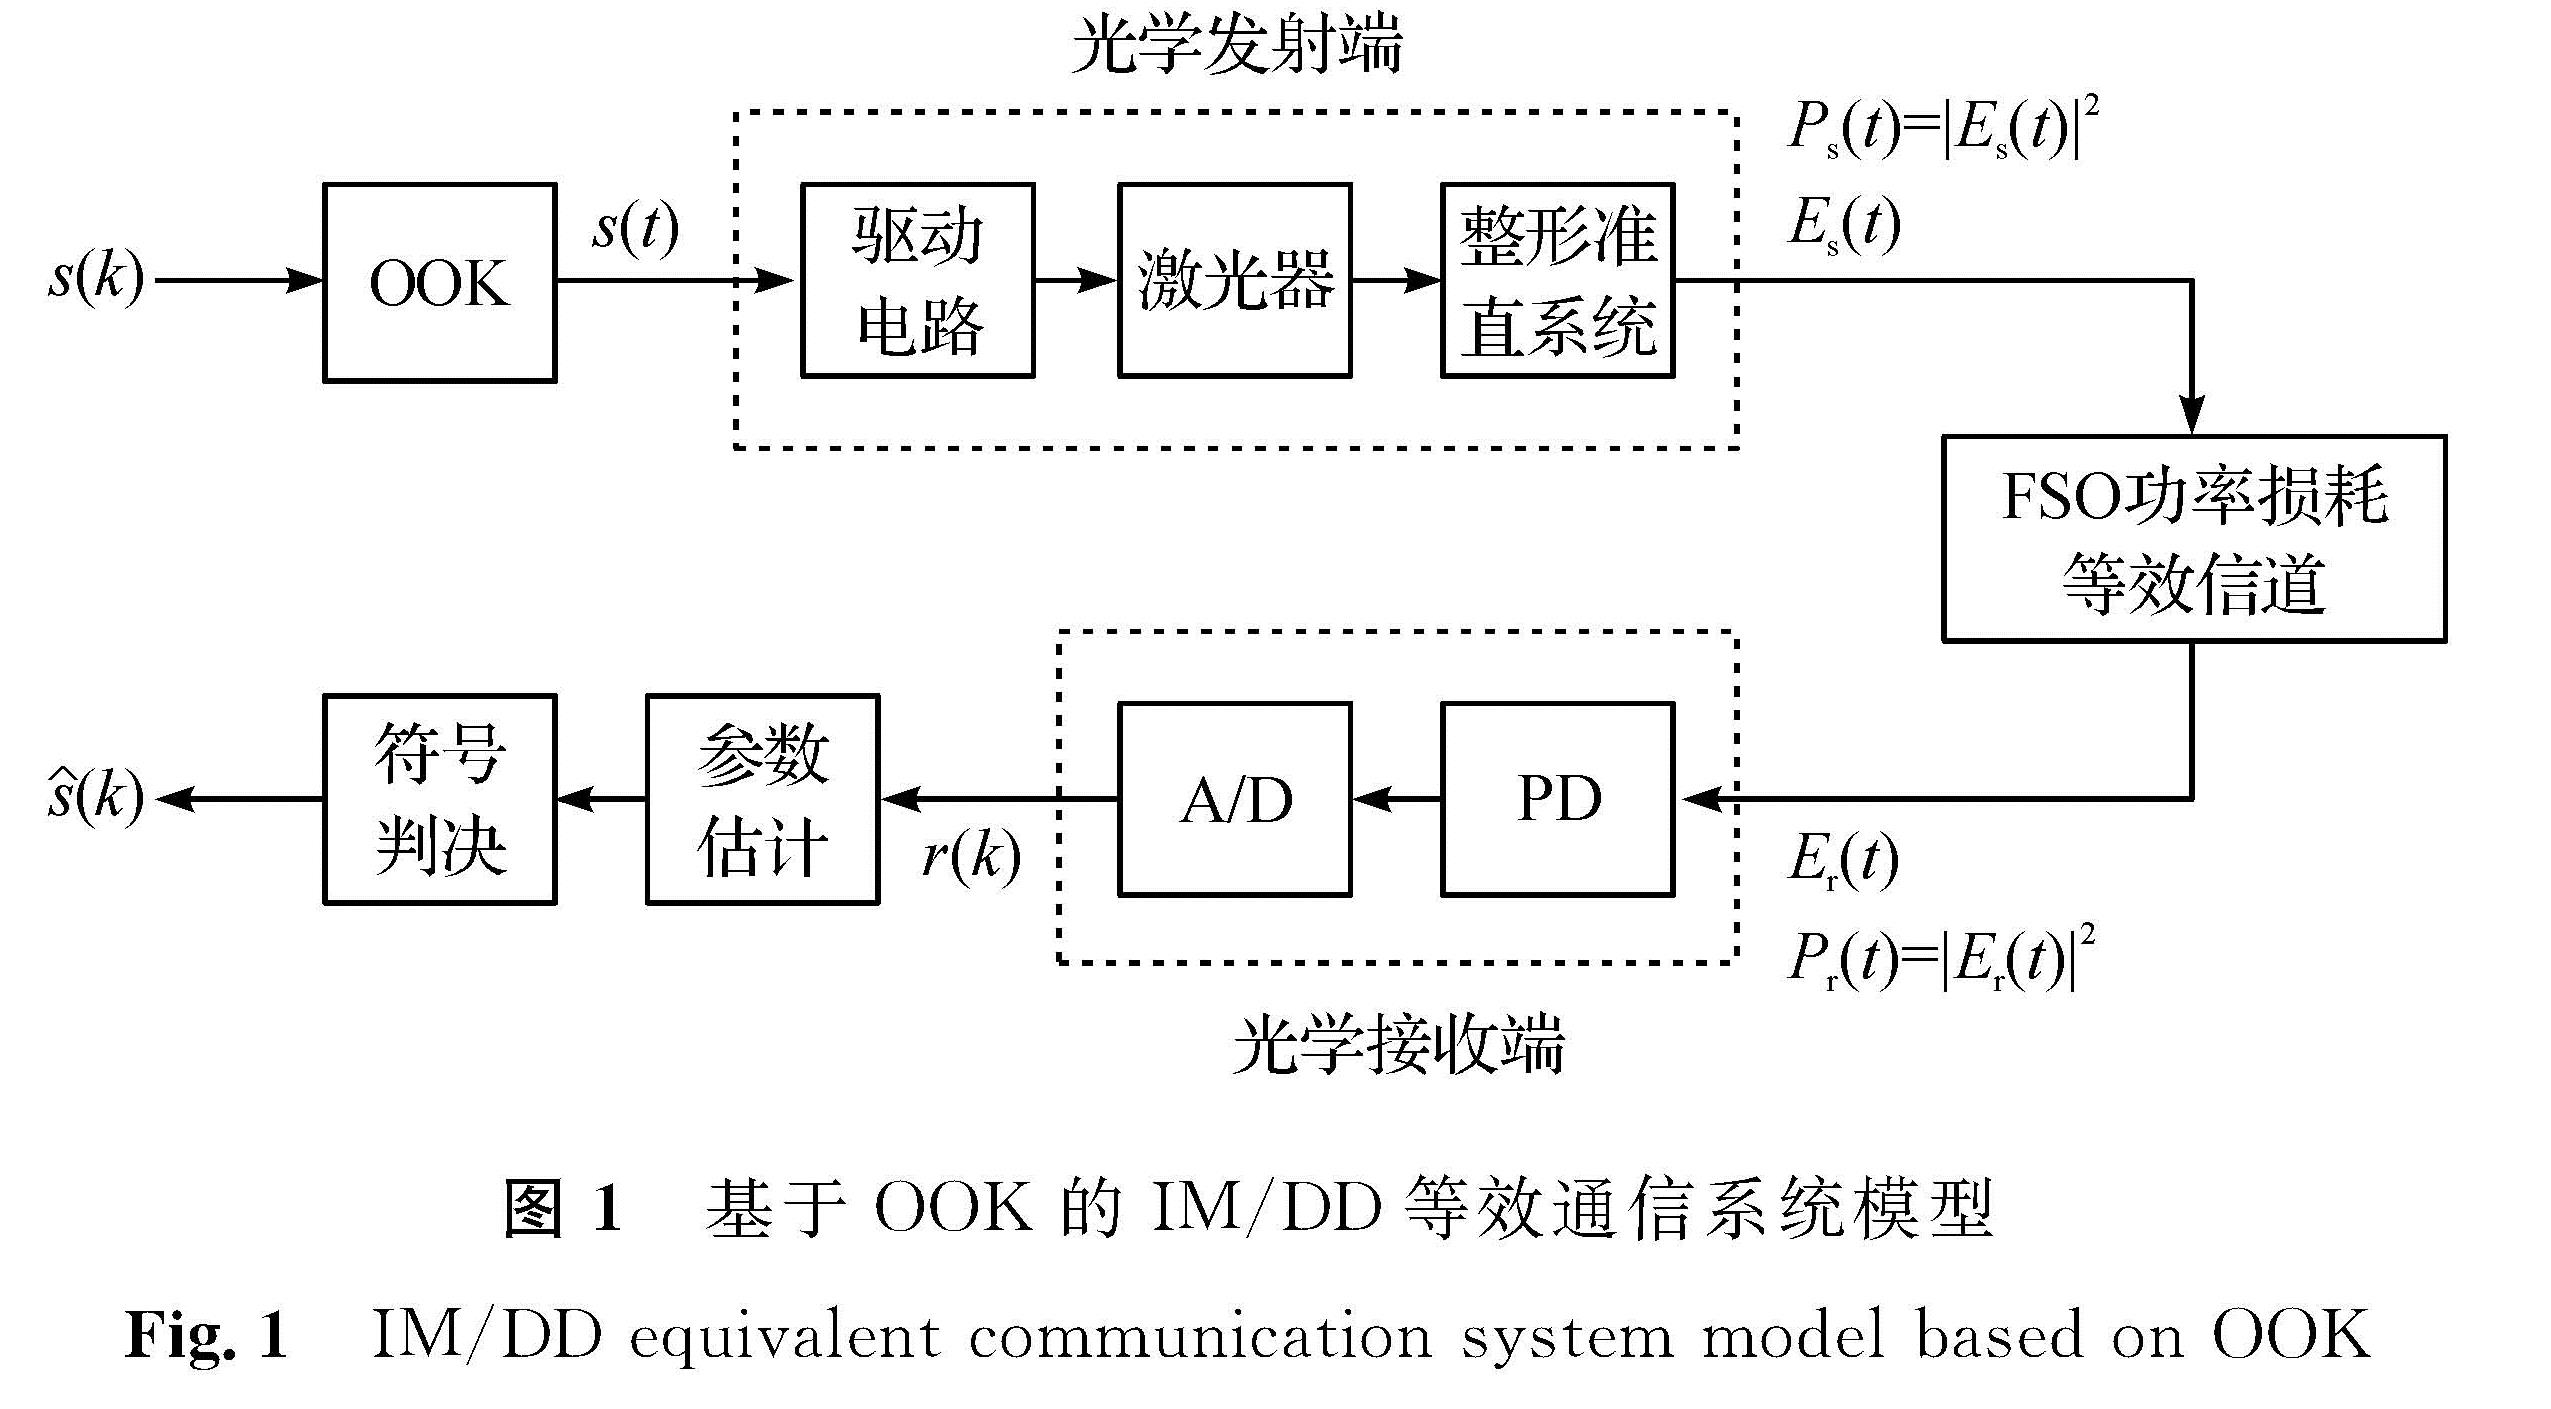 图1 基于OOK的IM/DD等效通信系统模型<br/>Fig.1 IM/DD equivalent communication system model based on OOK